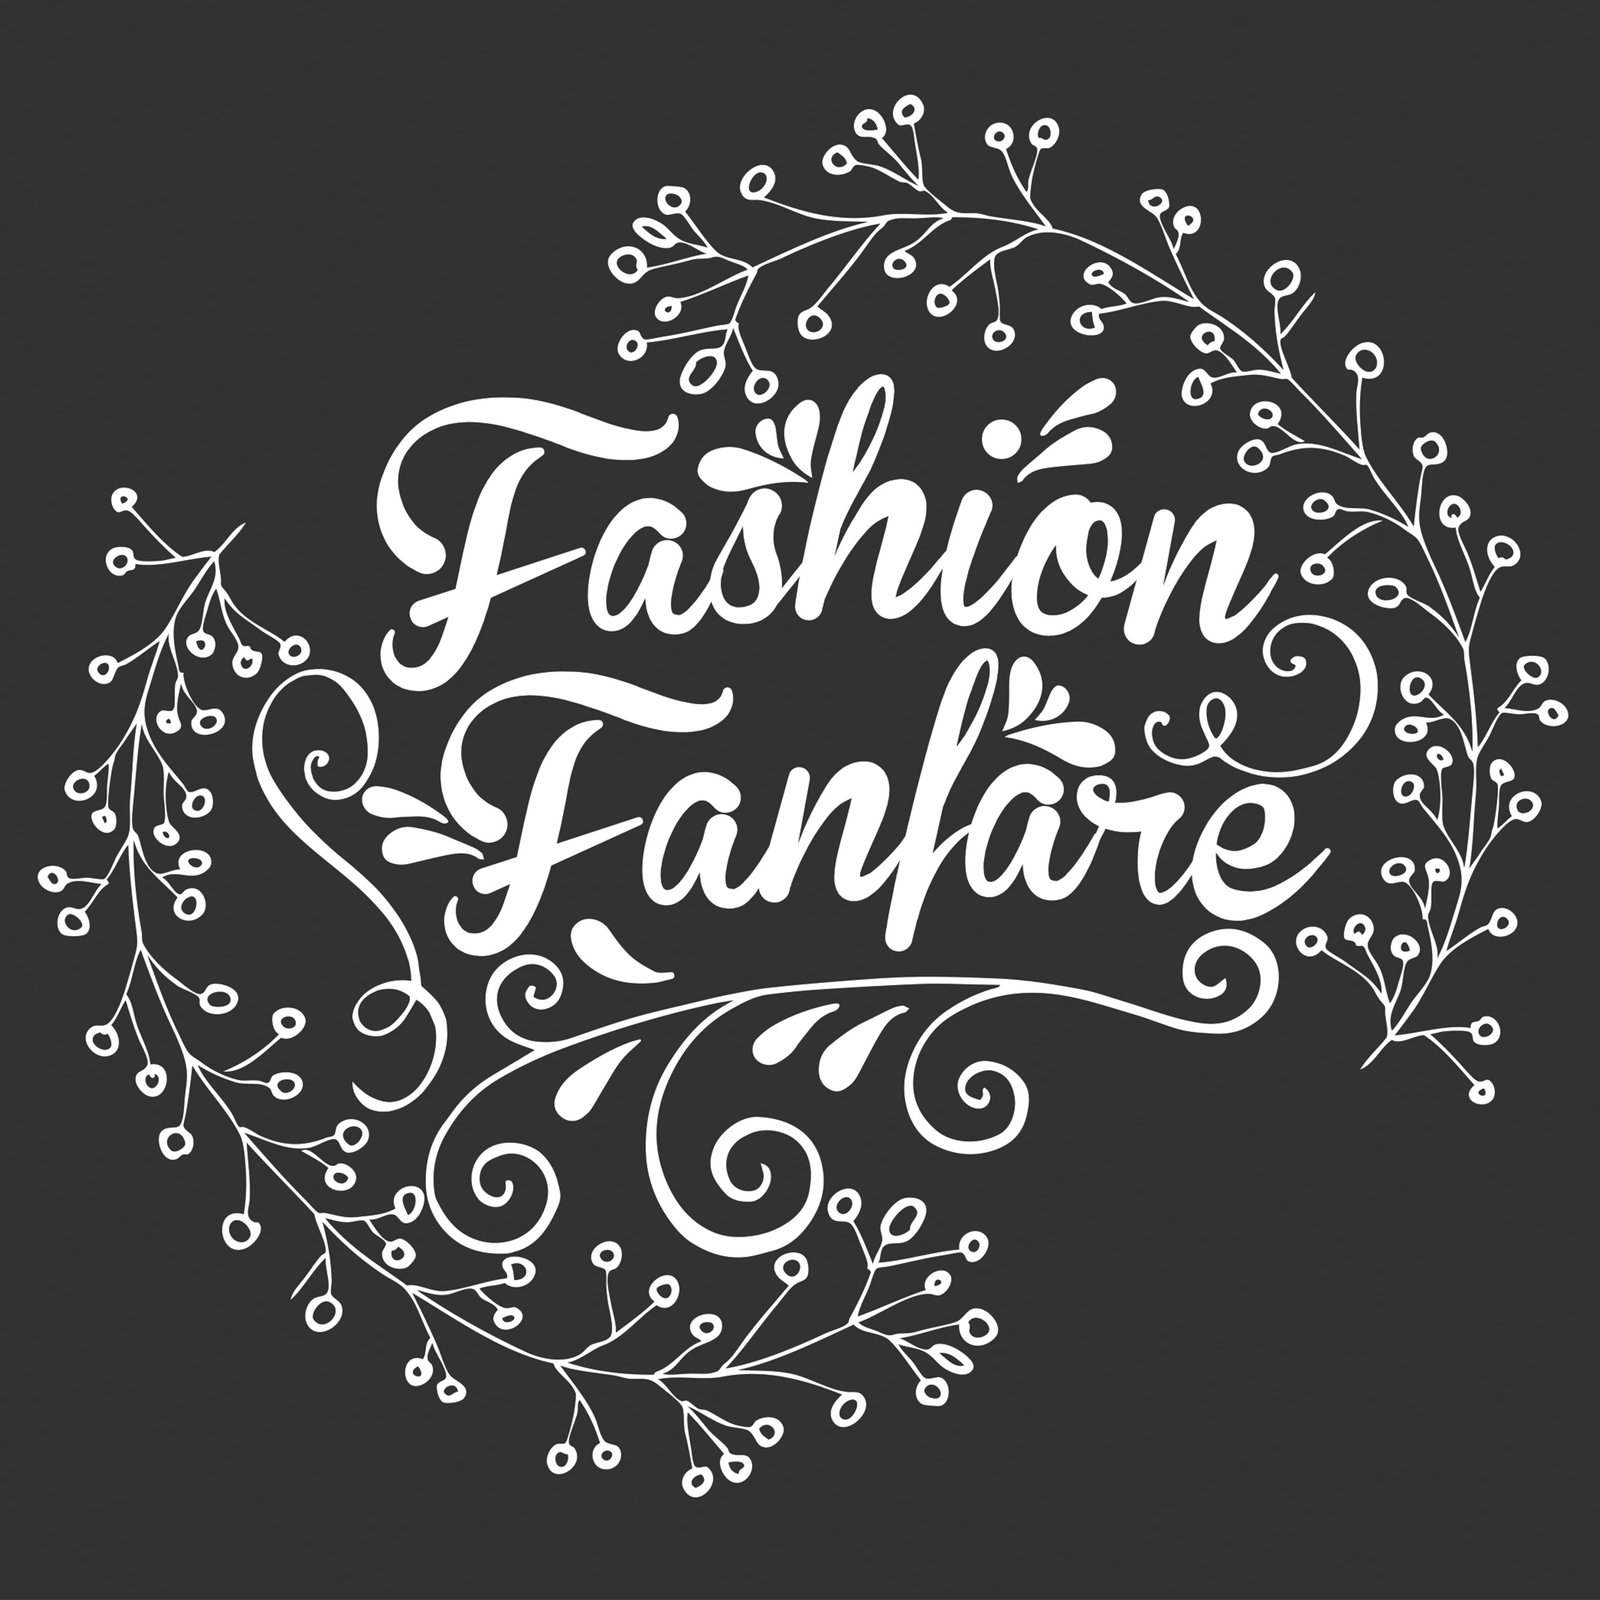 Fashion Fanfare